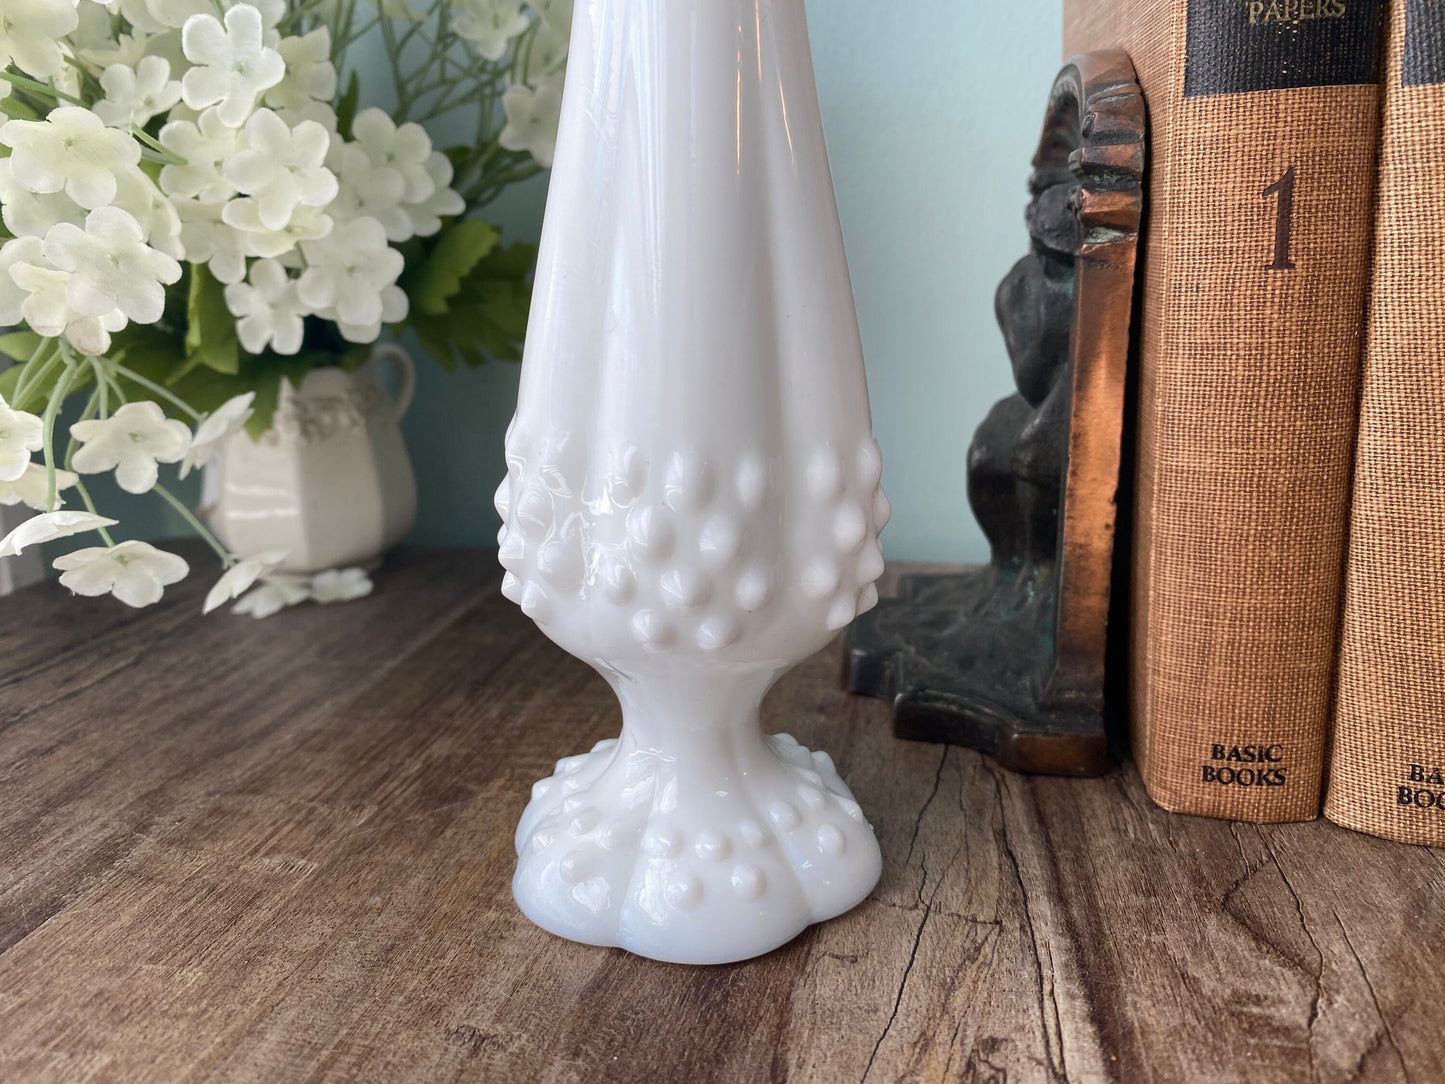 Midcentury Fenton Hobnail Stretch Milk Glass Vase